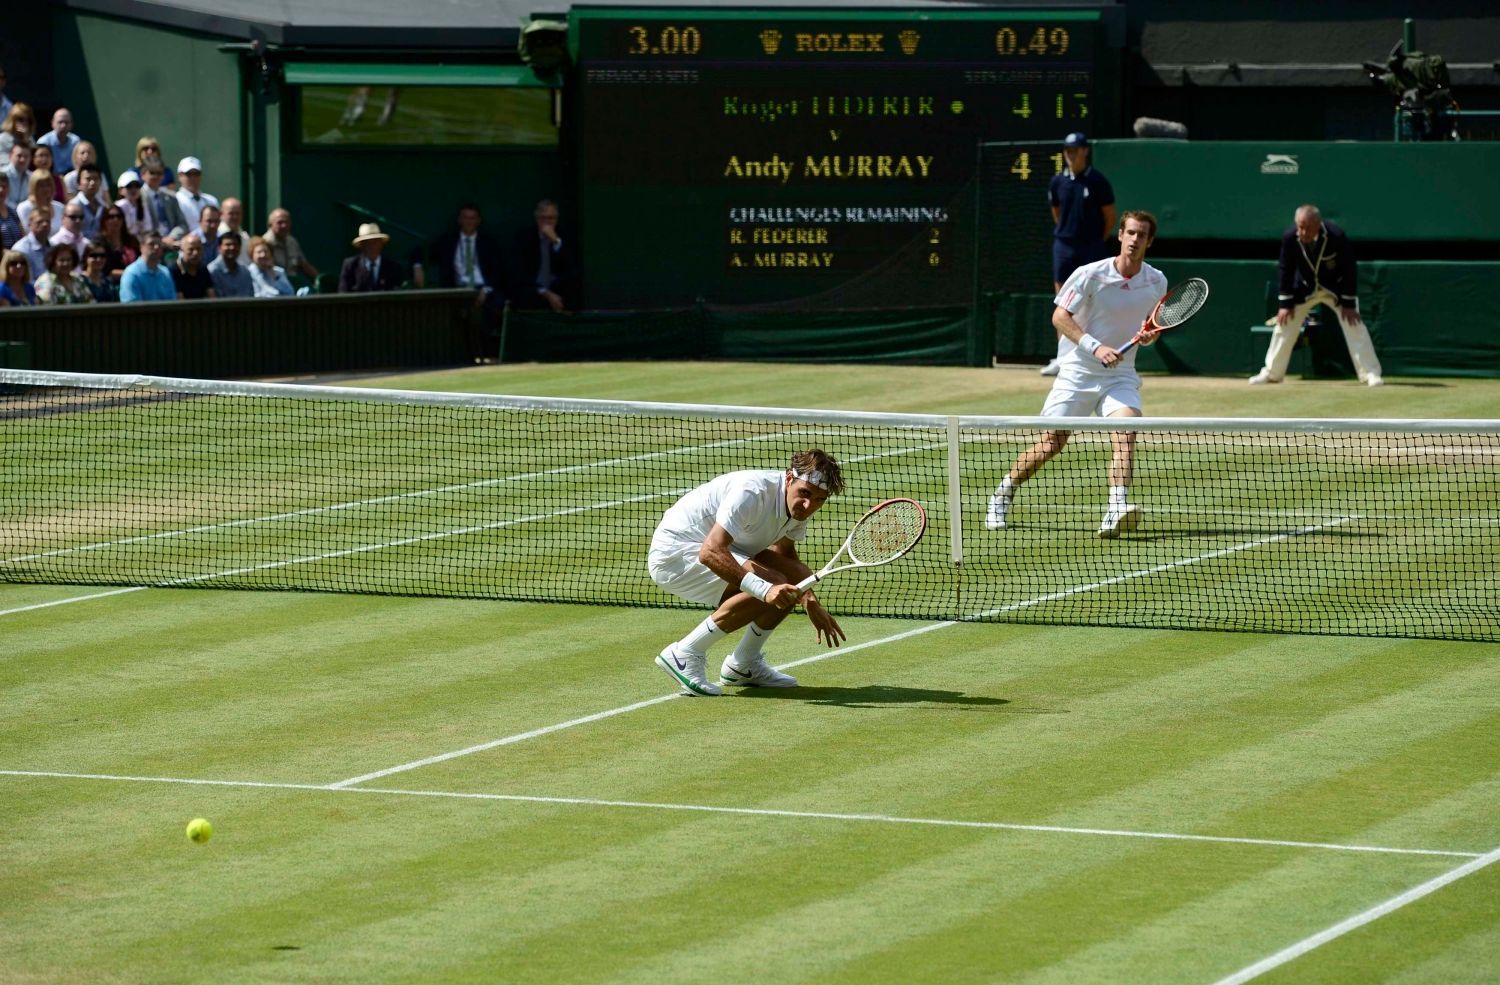 Švýcarský tenista Roger Federer míjí míček během utkání s Britem Andym Murraym ve finále Wimbledonu 2012.